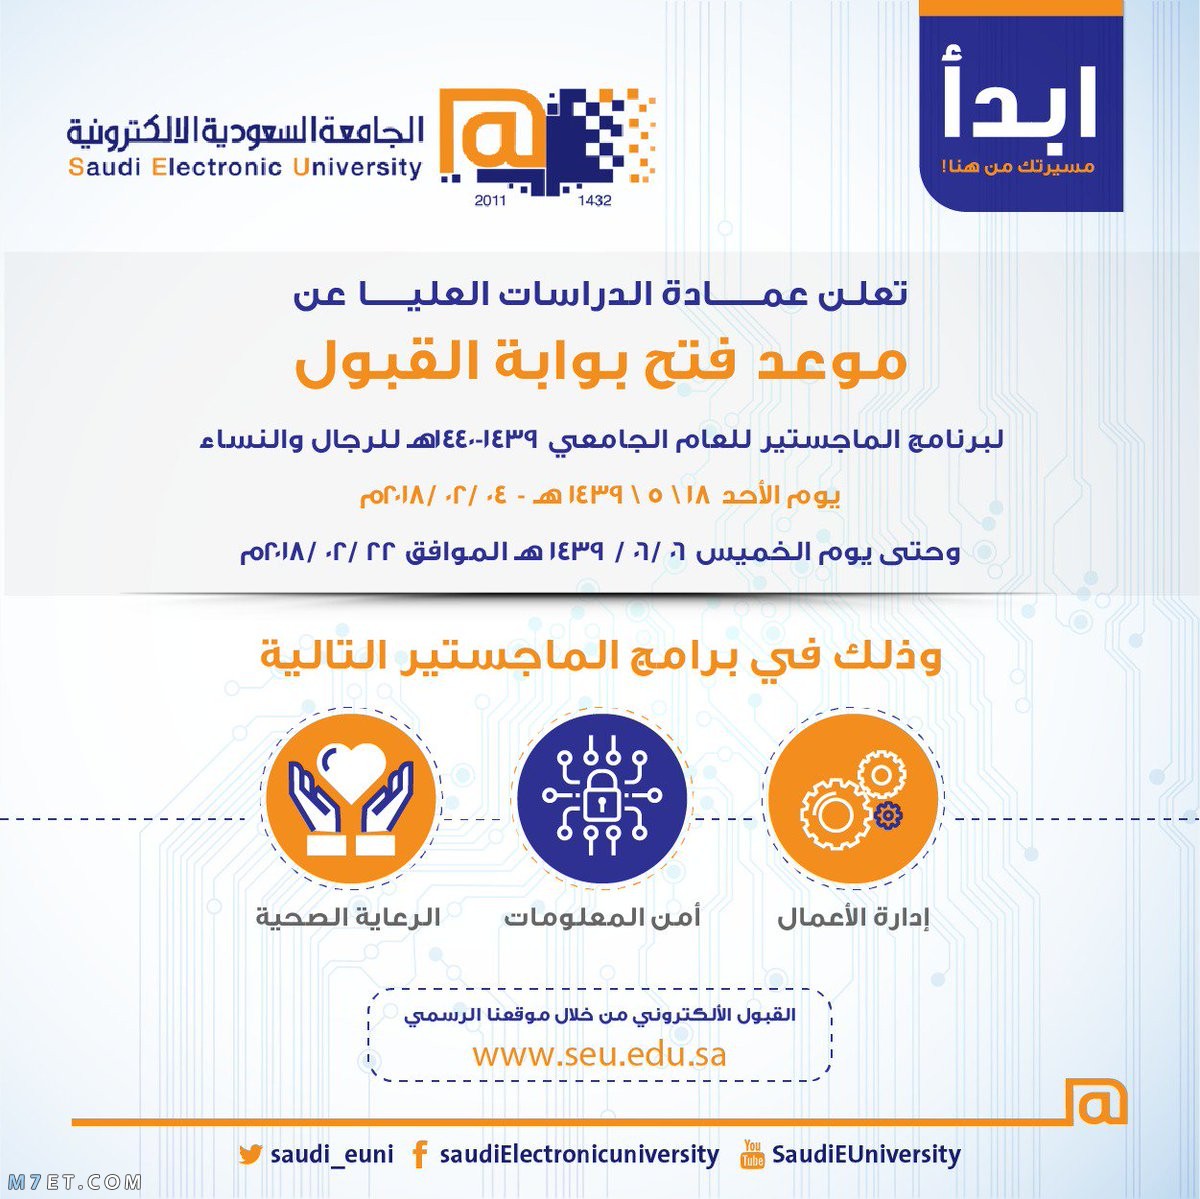 التسجيل في الجامعة السعودية الالكترونية